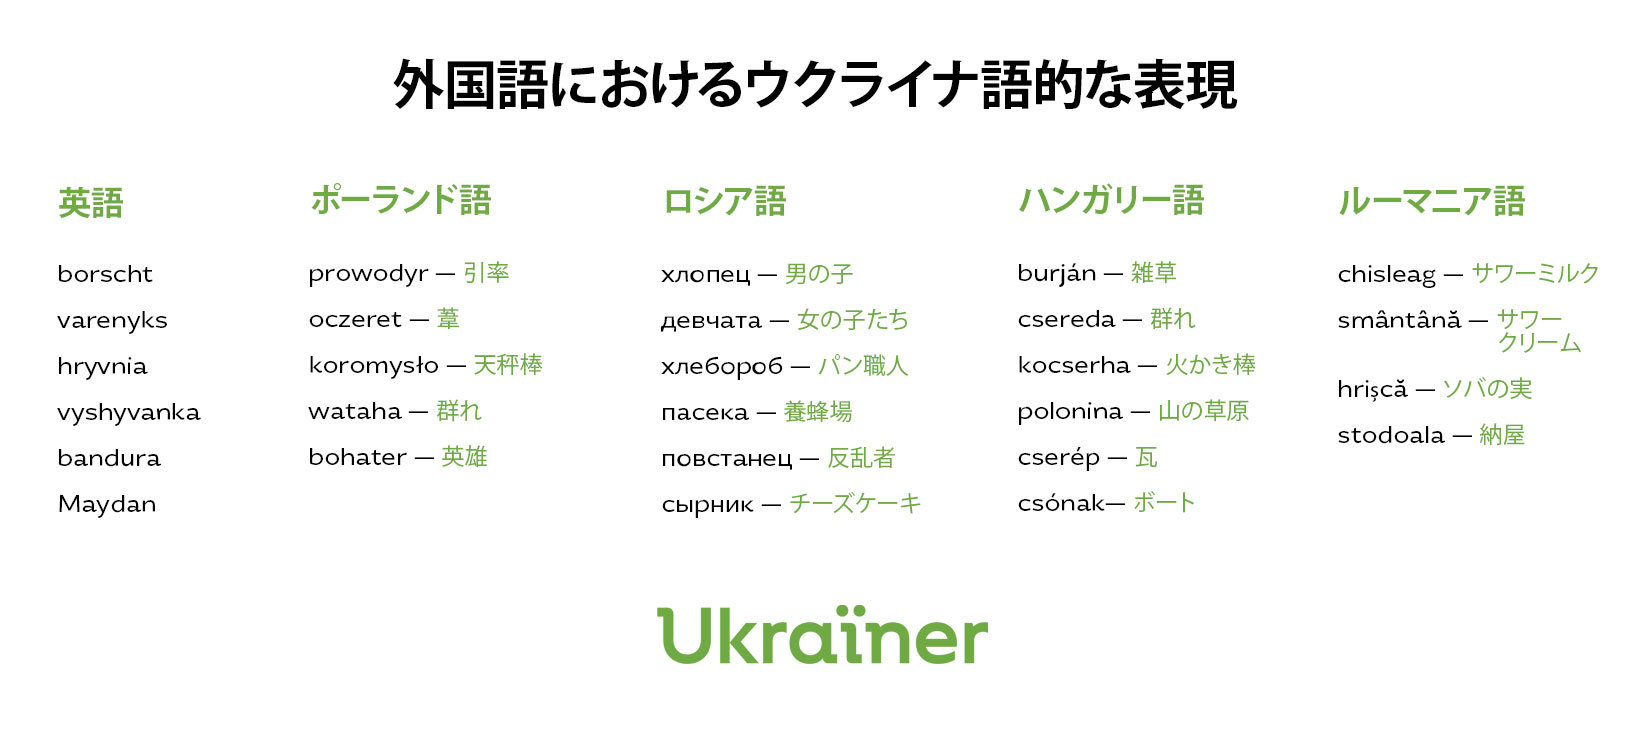 ウクライナ語とは何なのか？ • Ukraїner